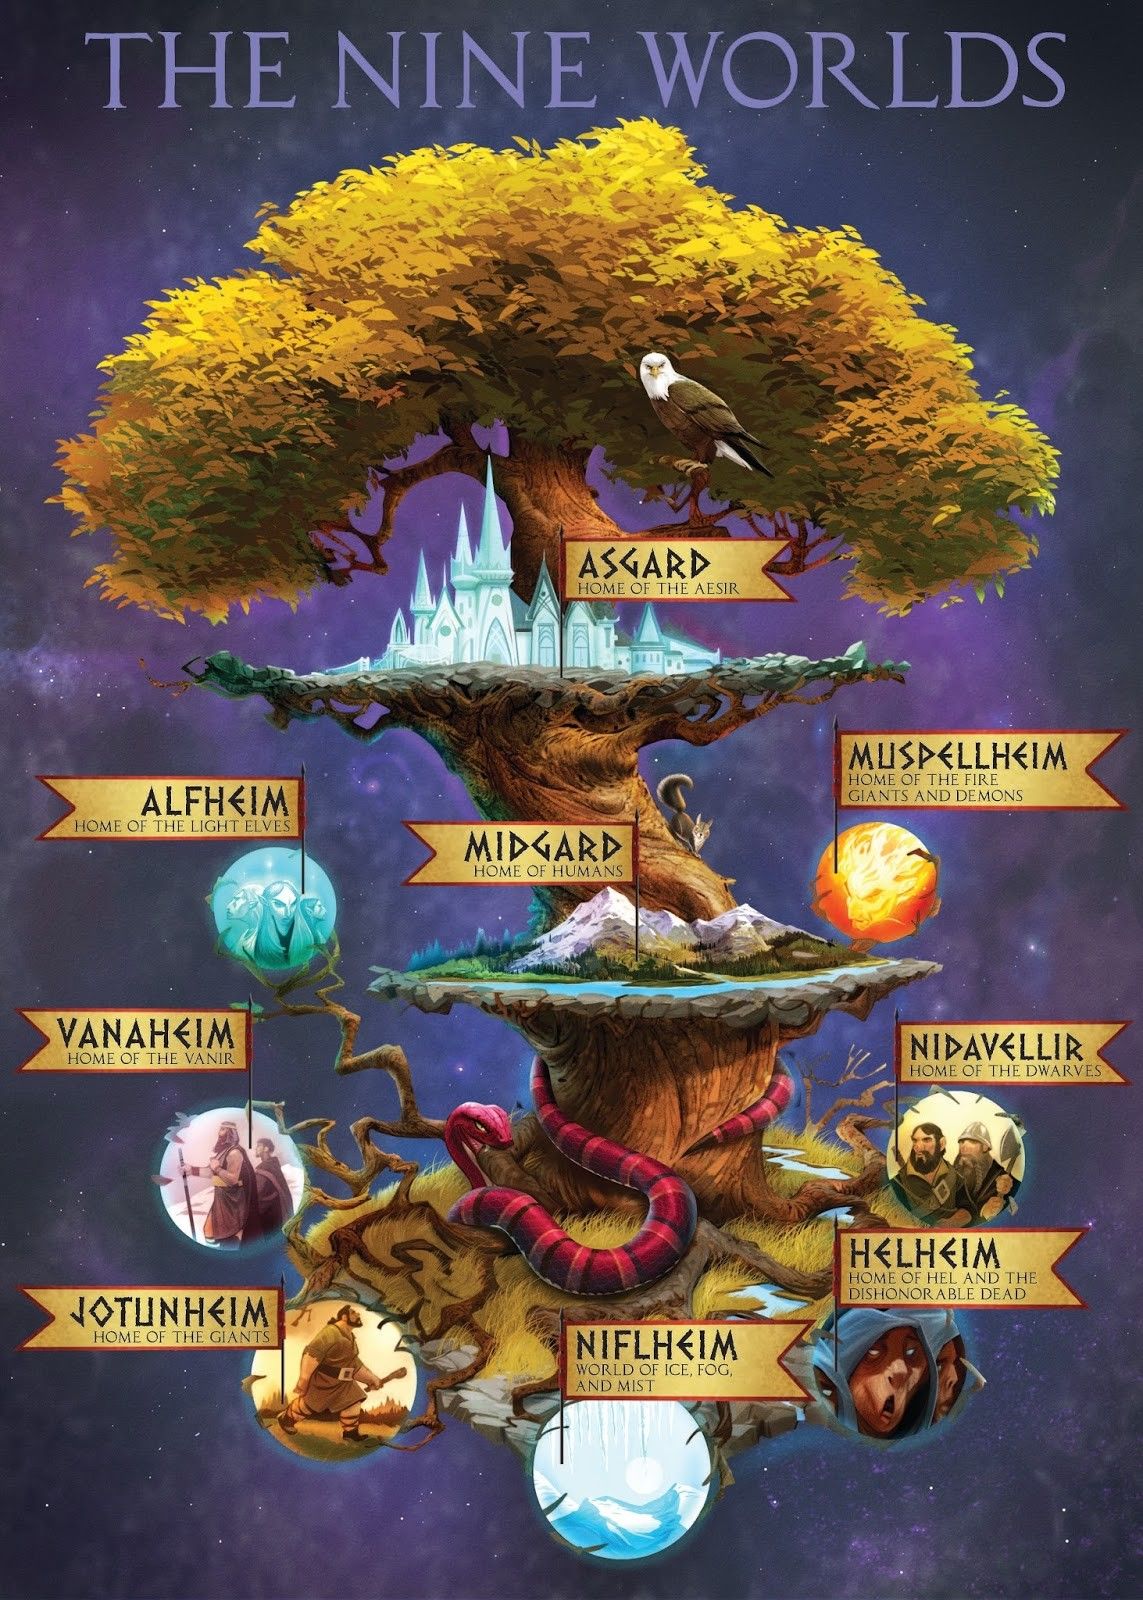 所有的平行宇宙,都源自这颗世界树|北欧科幻tour